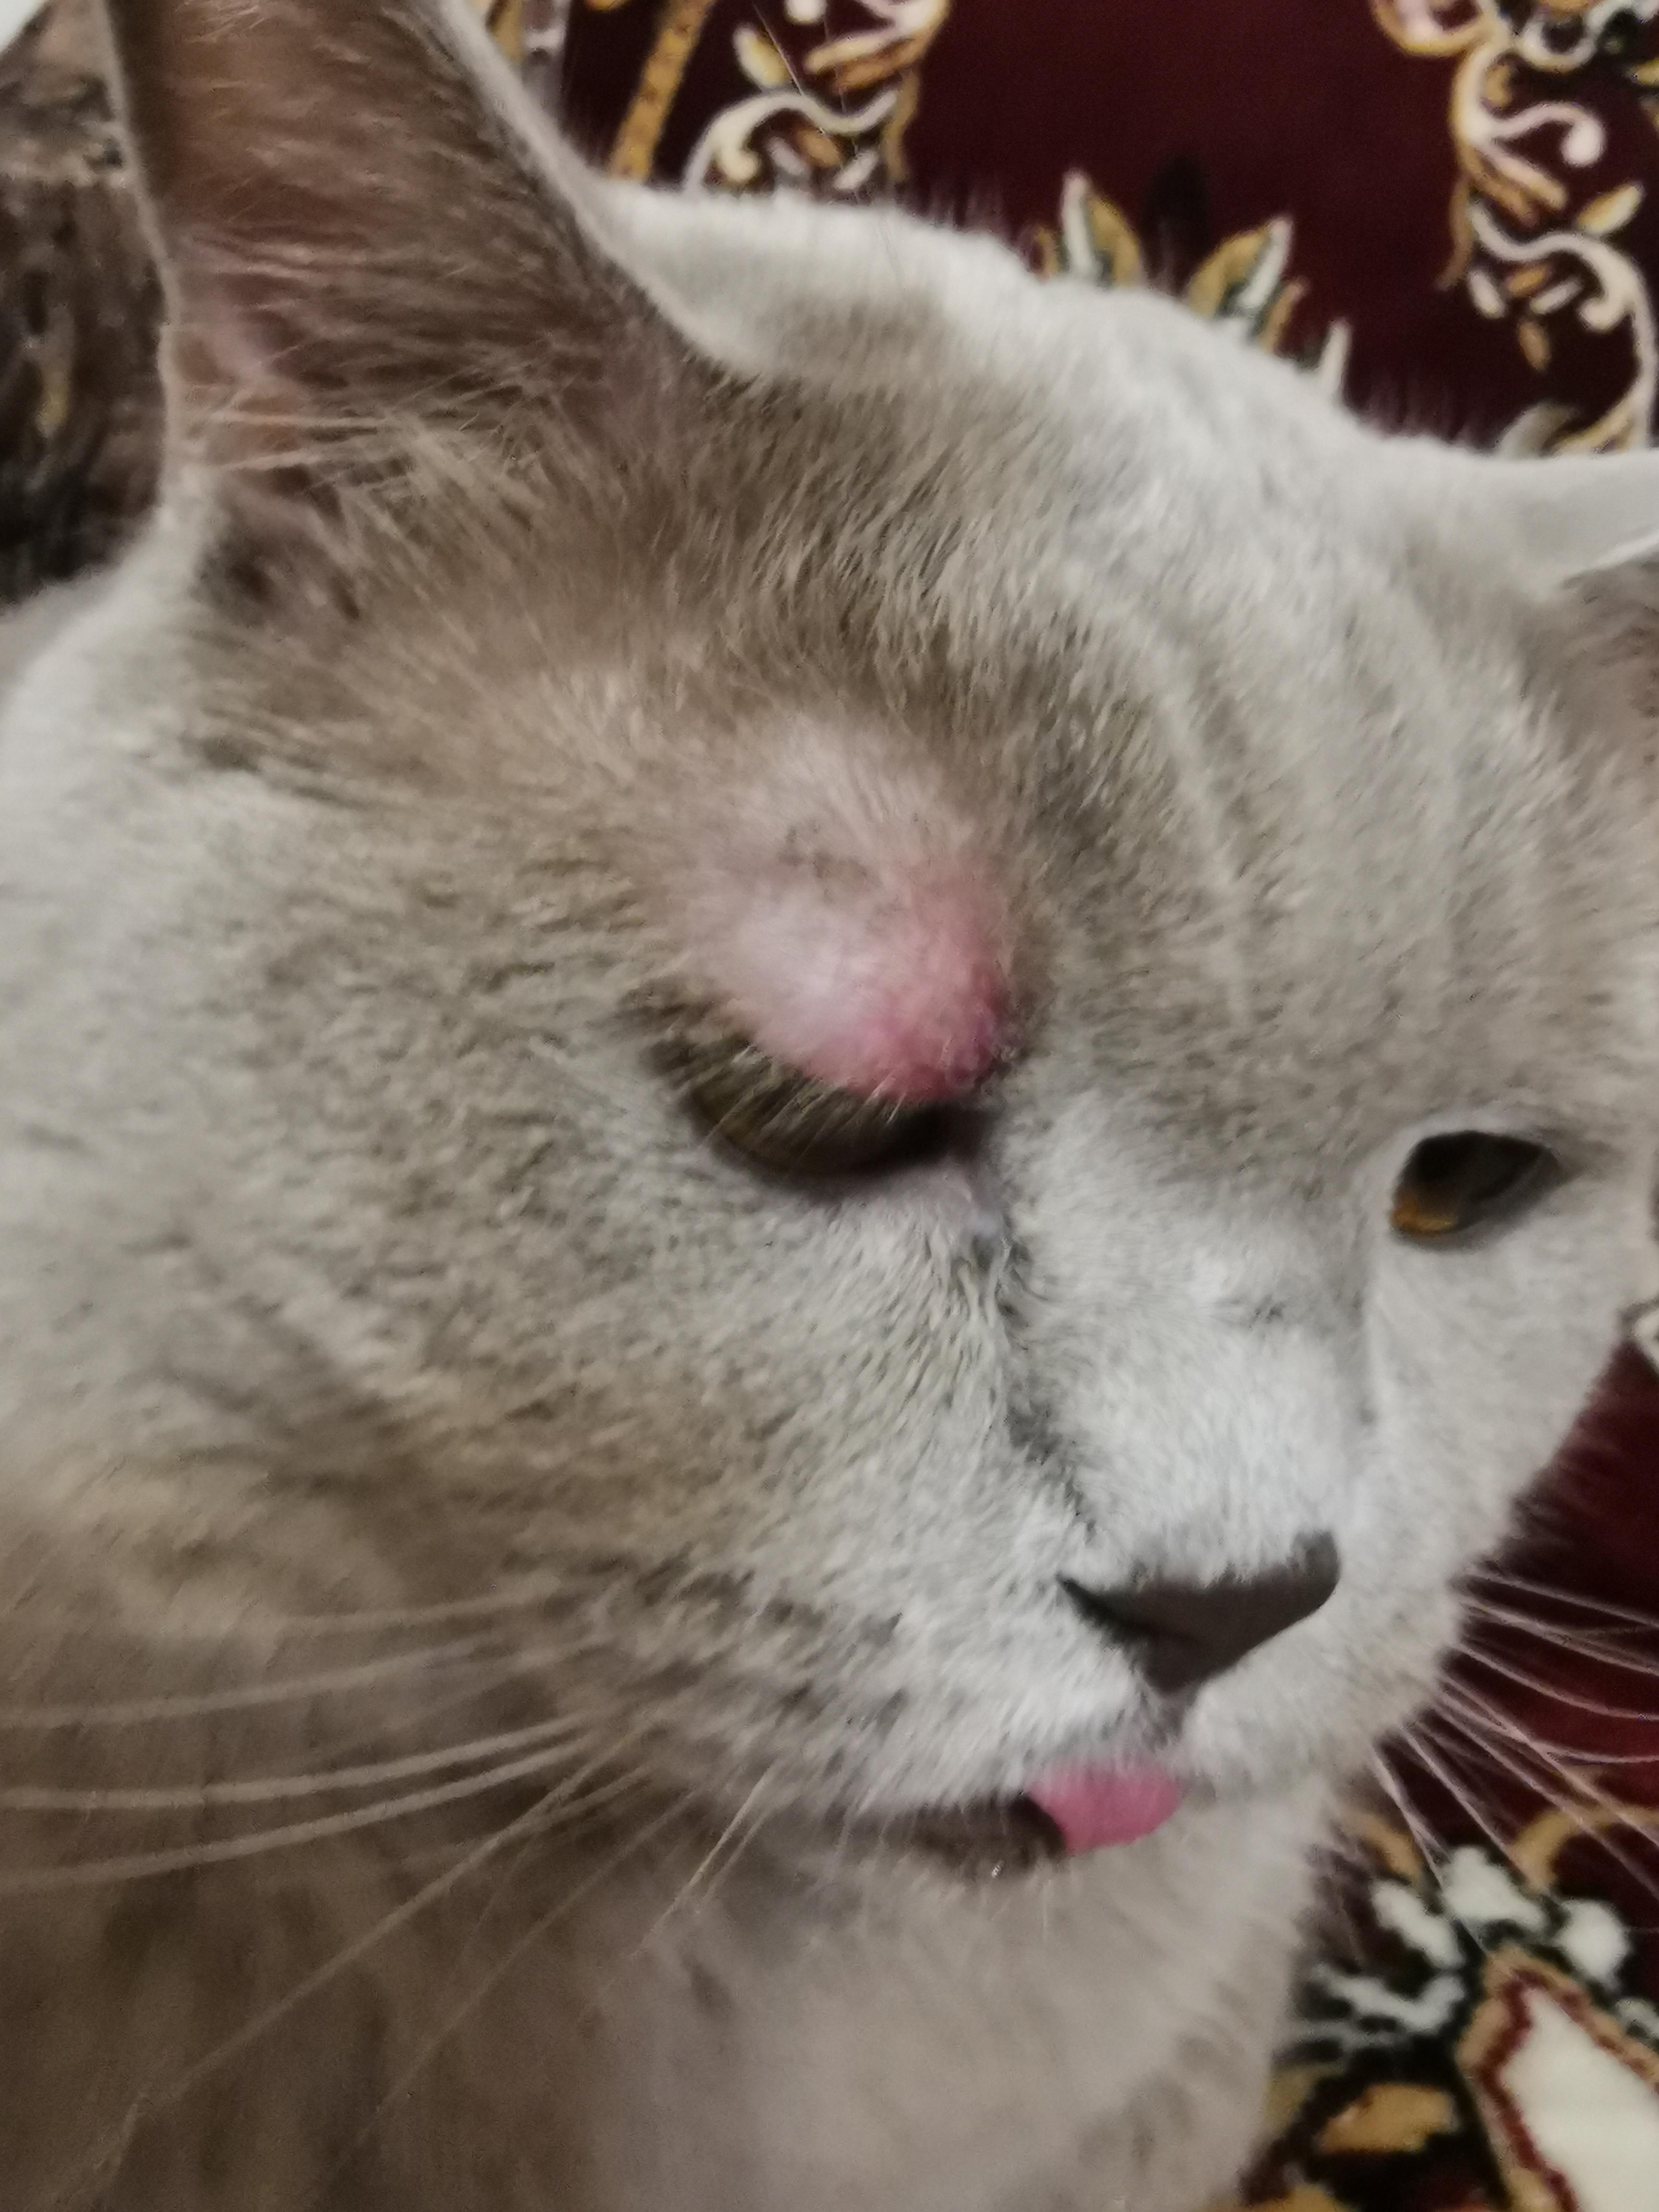 Опухоль над глазом у кота